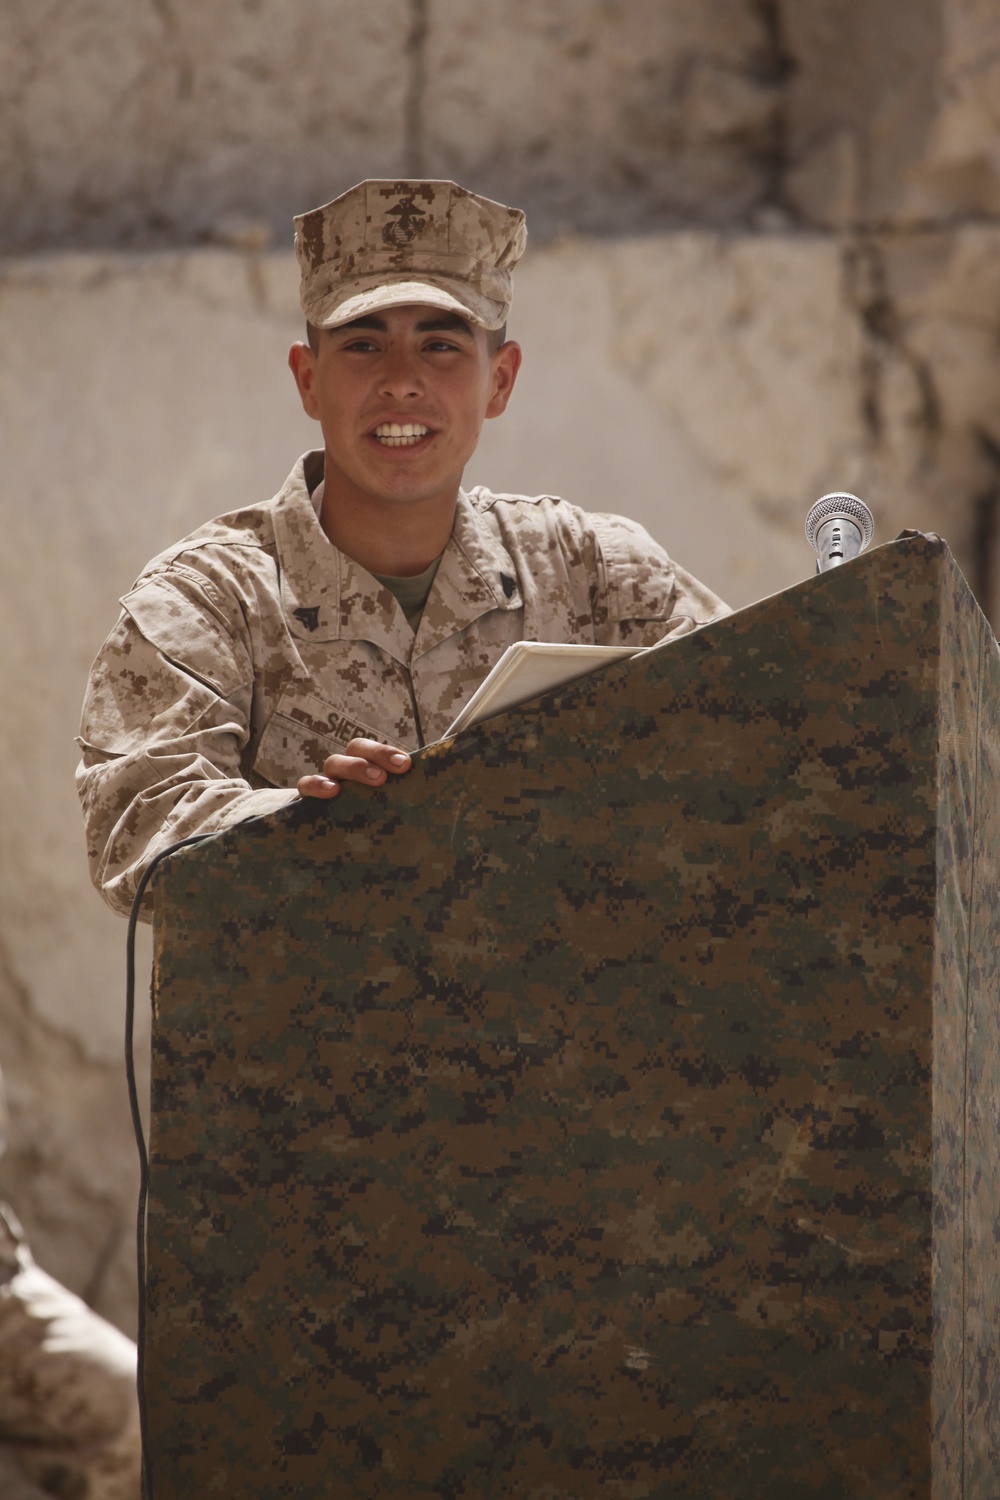 N.C. Marine honored in Afghanistan as a true leader, mentor, friend